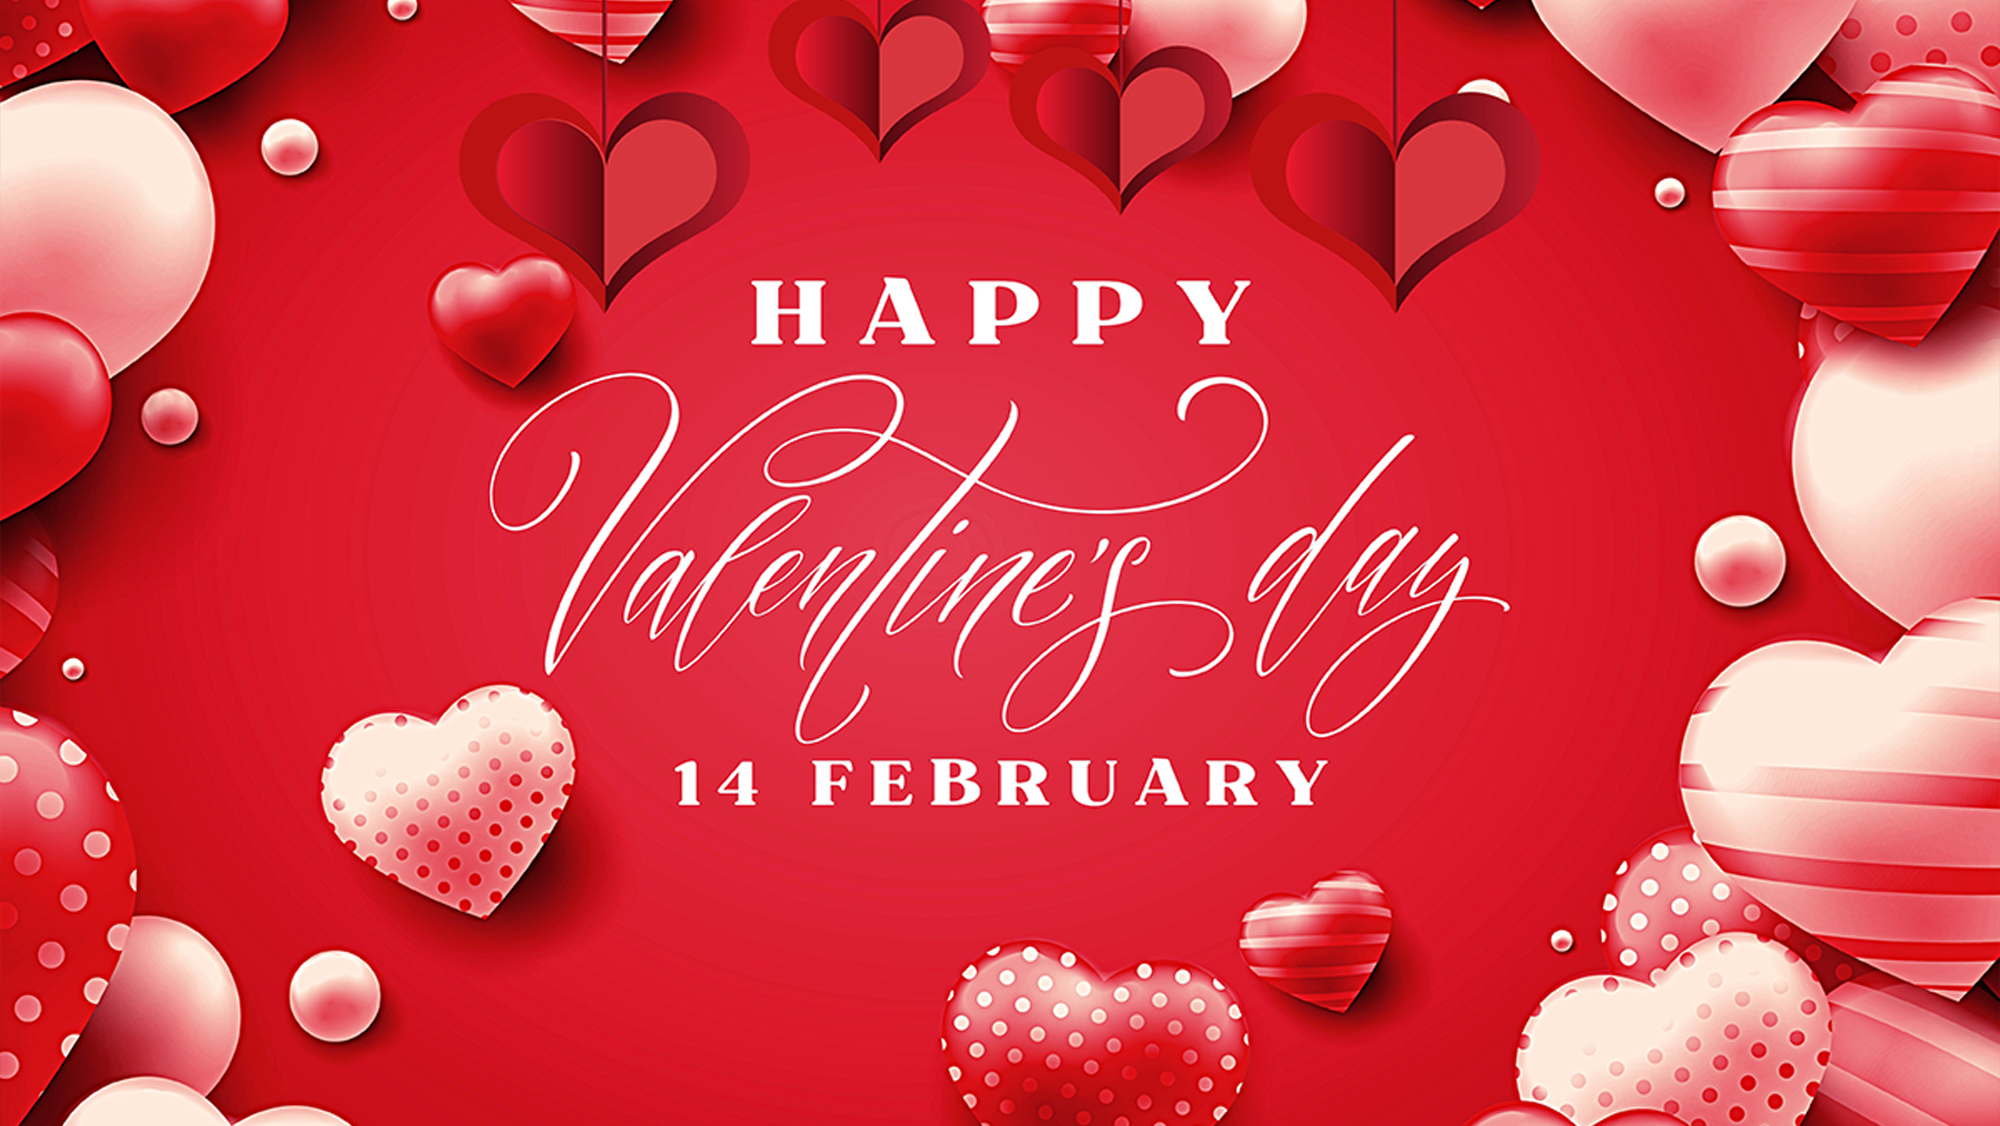 Шаблон 14 февраля вечеринка в честь Дня святого Валентина видео флаер | PosterMyWall